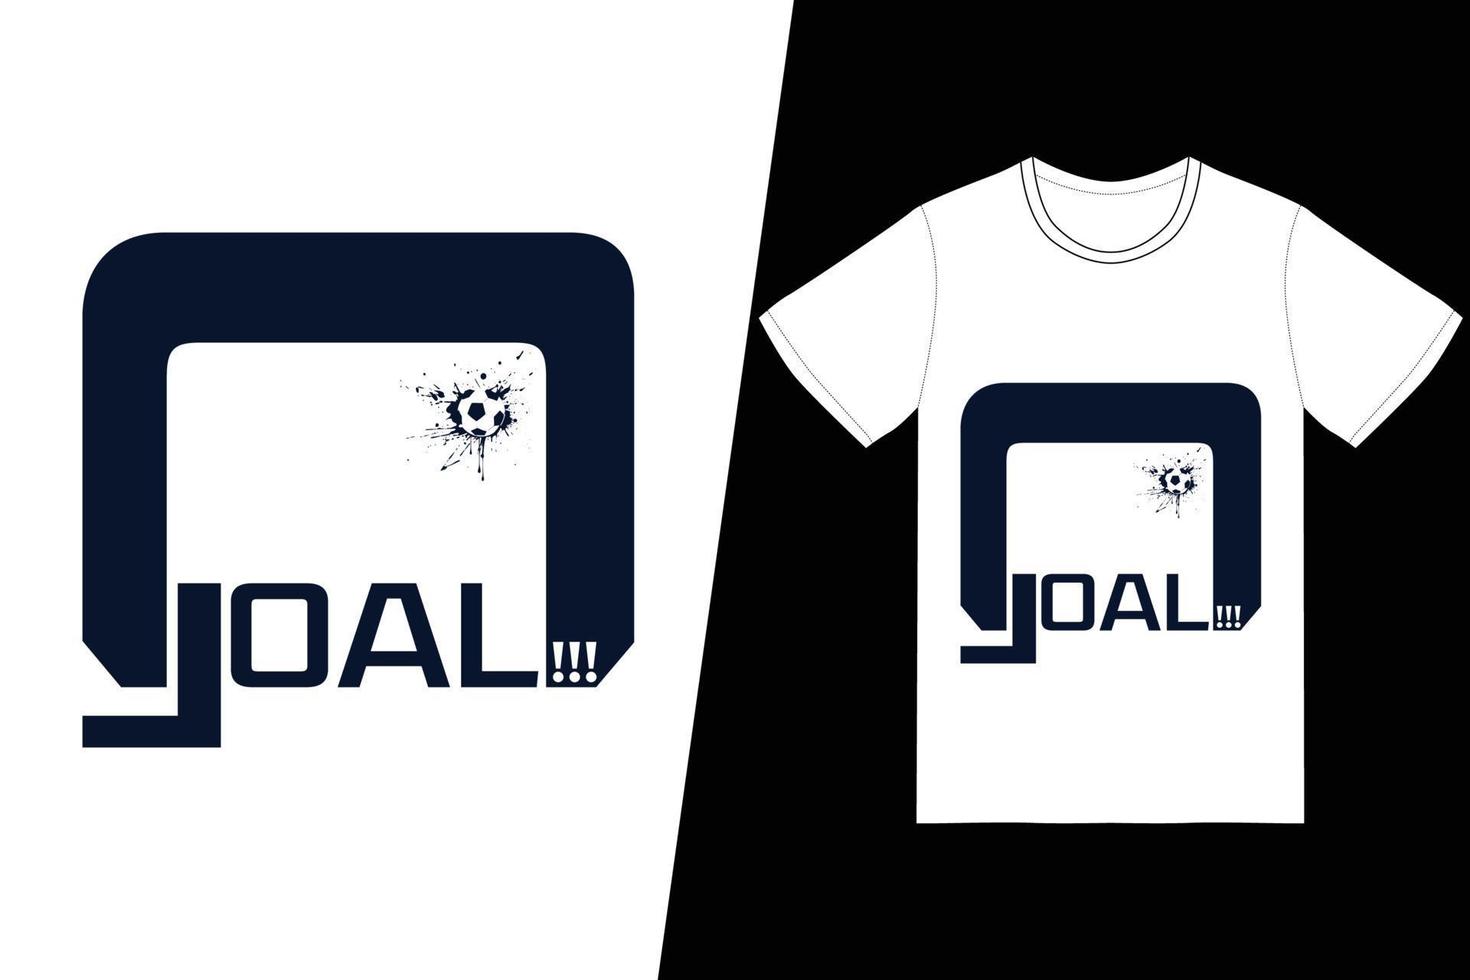 projeto de futebol fifa objetivo. vetor de design de t-shirt de futebol fifa. para impressão de camisetas e outros usos.